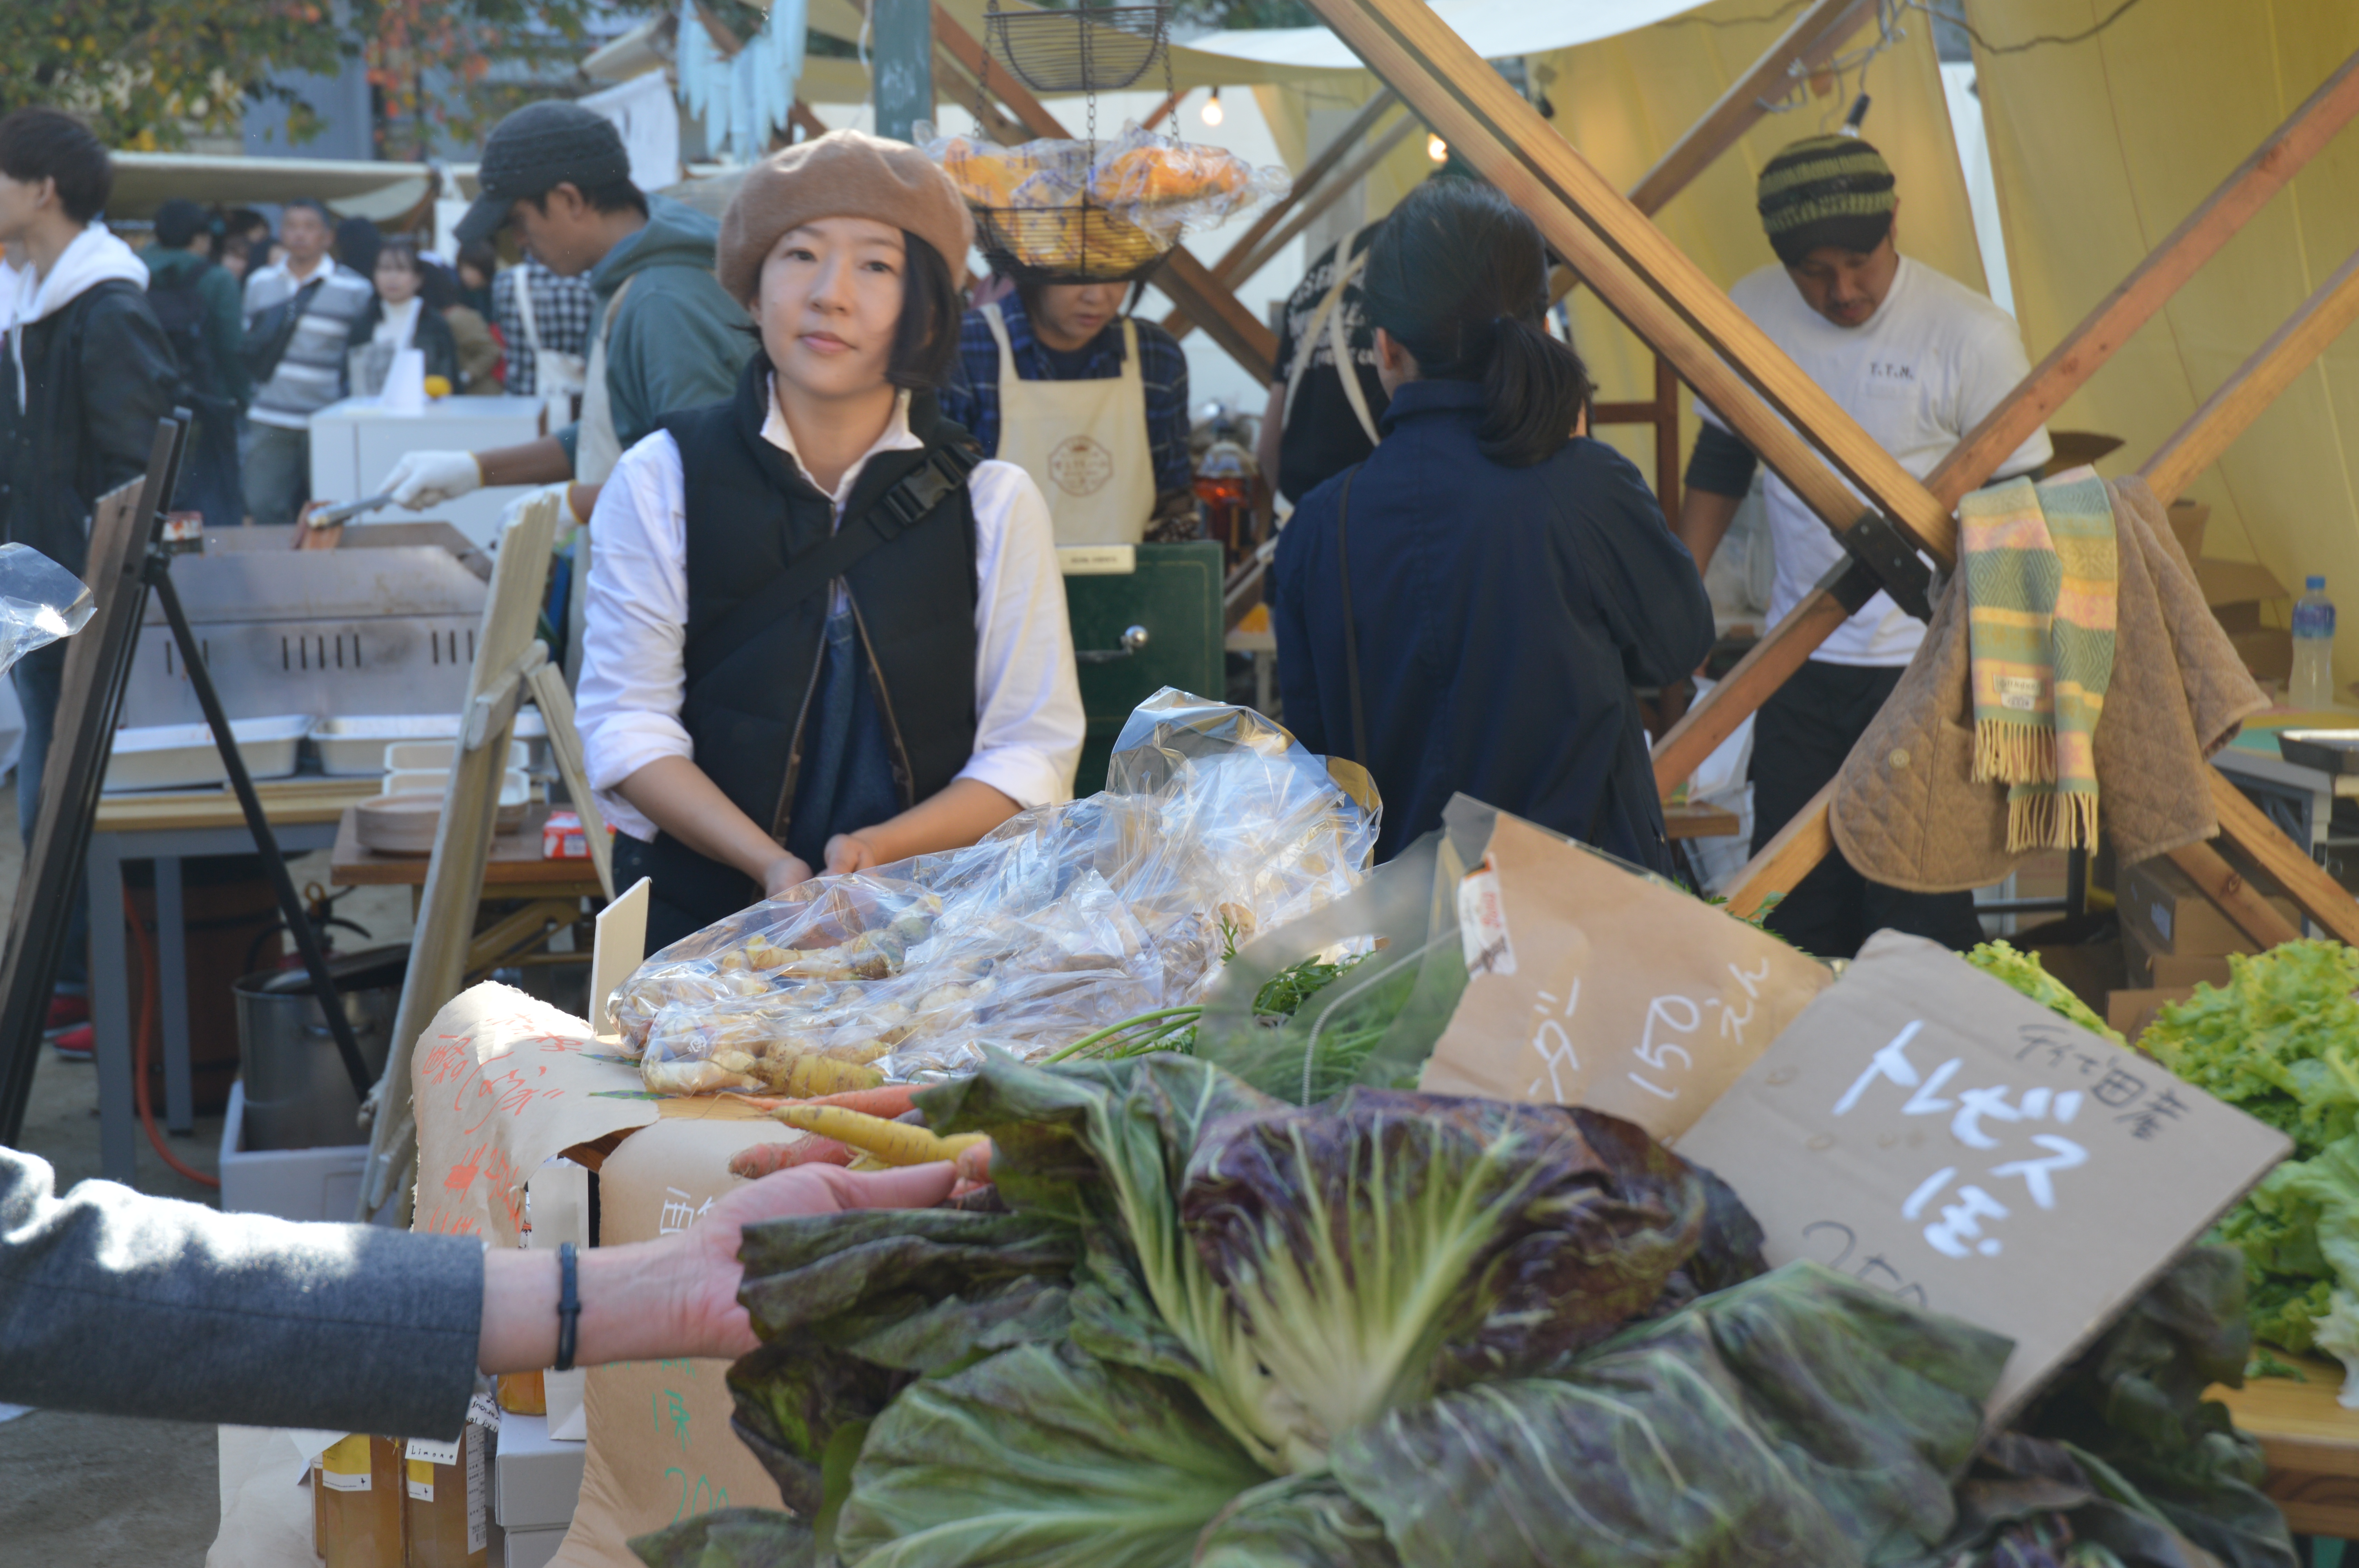 広島近郊で採れた野菜を販売する出店者さん。ひとの顔が見えるのがマーケットの醍醐味。 